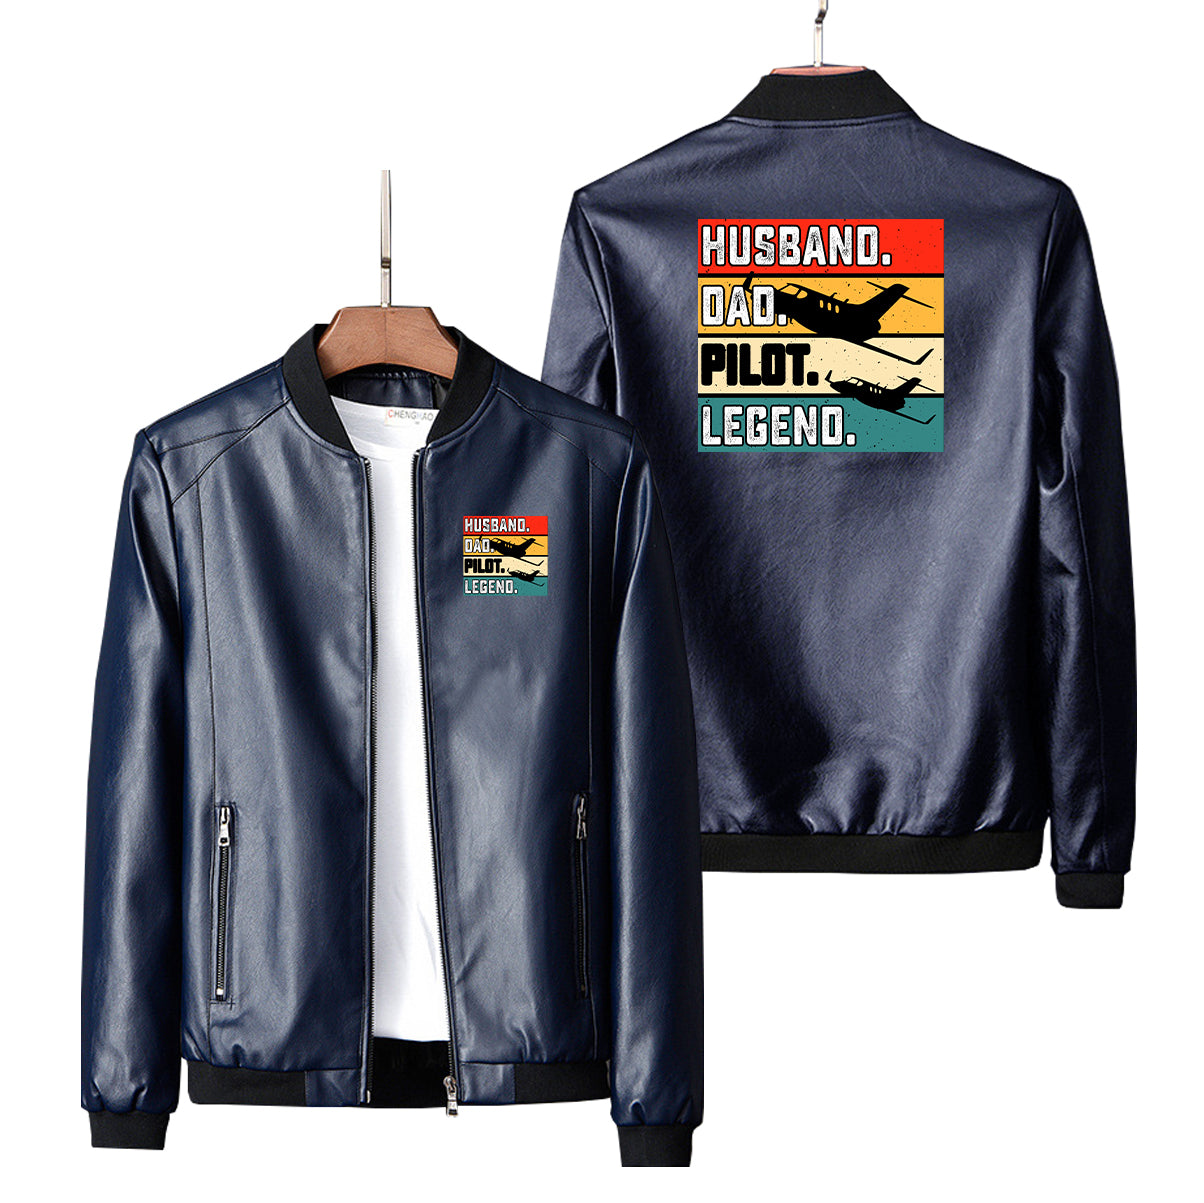 Husband & Dad & Pilot & Legend Designed PU Leather Jackets